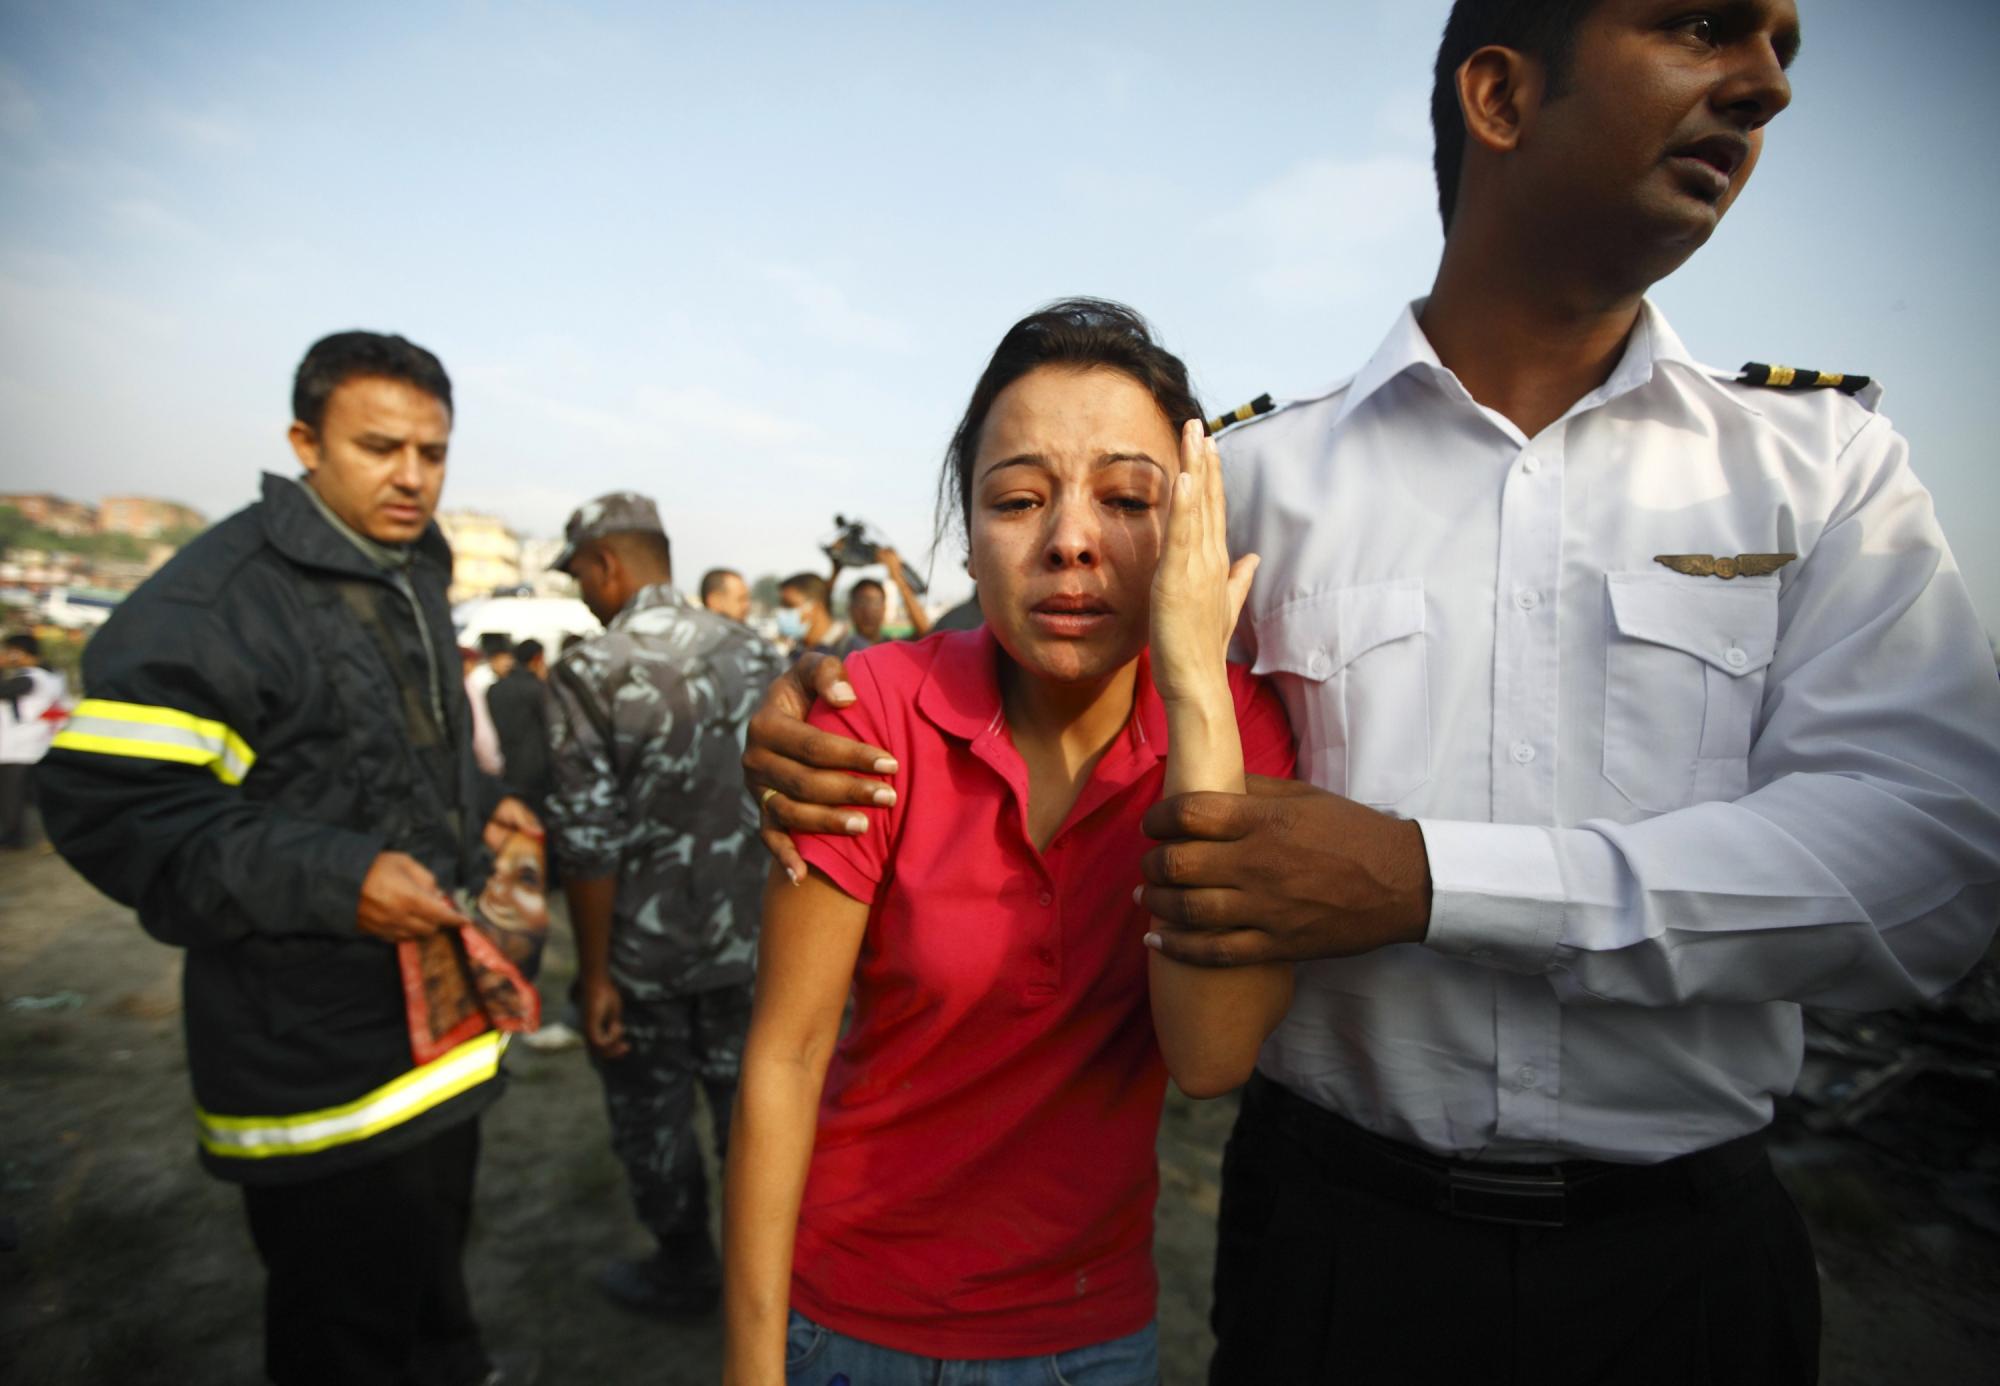 尼泊尔小型客机坠毁19人遇难 包括4名中国公民和1名美籍华人